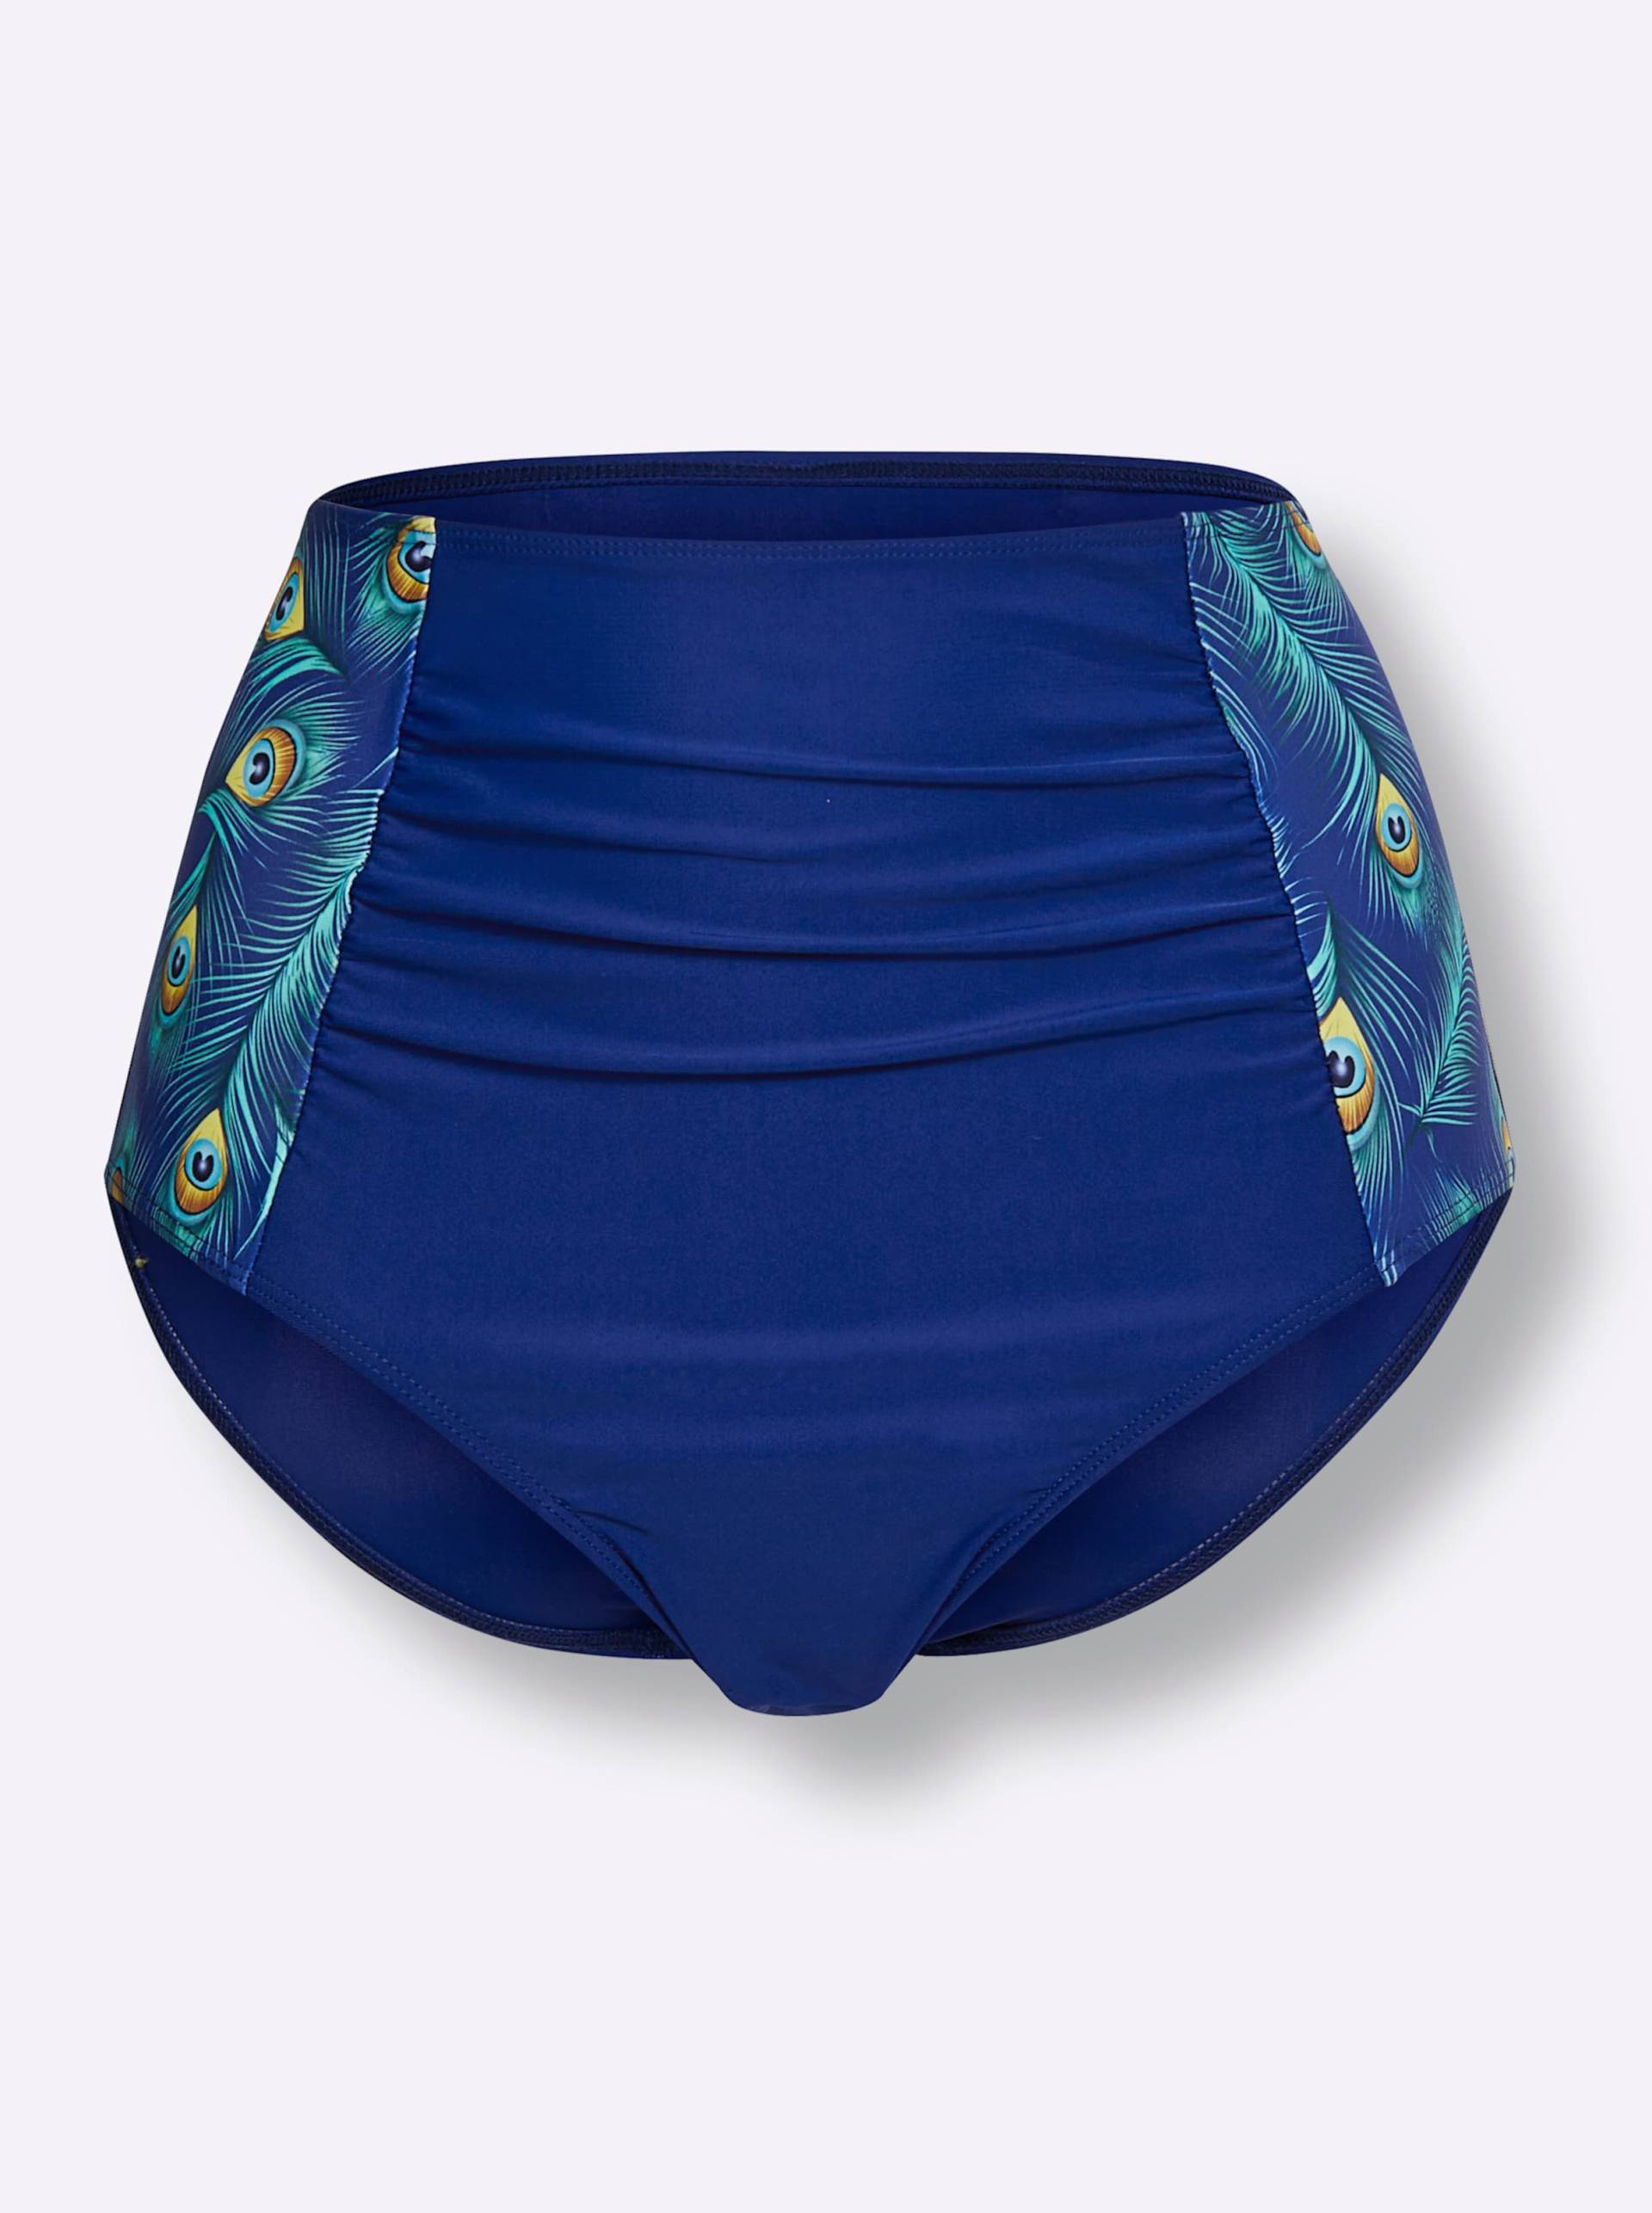 Bikini-Slip in royalblau-blaugrün-bedruckt von feel good